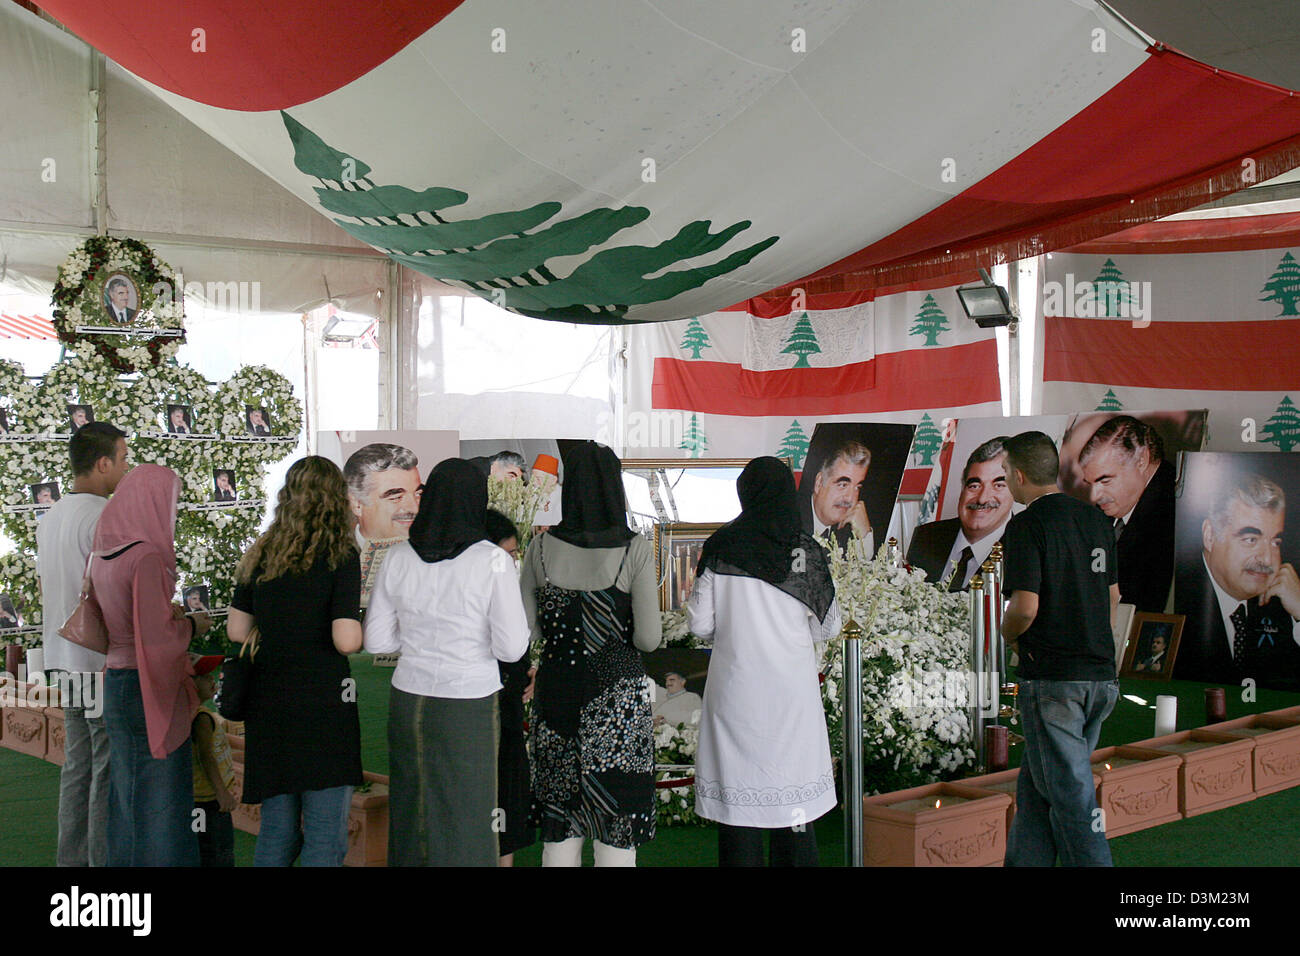 (Dpa) - visita libanés la tumba del asesinado político Rafik Hariri en Beirut, Líbano, 01 de octubre de 2005. El ex primer ministro libanés Hariri y otras 20 personas fueron muertas en un atentado el 14 de febrero de 2005. En relación con un informe de la ONU publicado el 21 de octubre de 2005, fuerzas de seguridad sirias estuvieron implicados en el asesinato. Foto: Oliver Berg Foto de stock